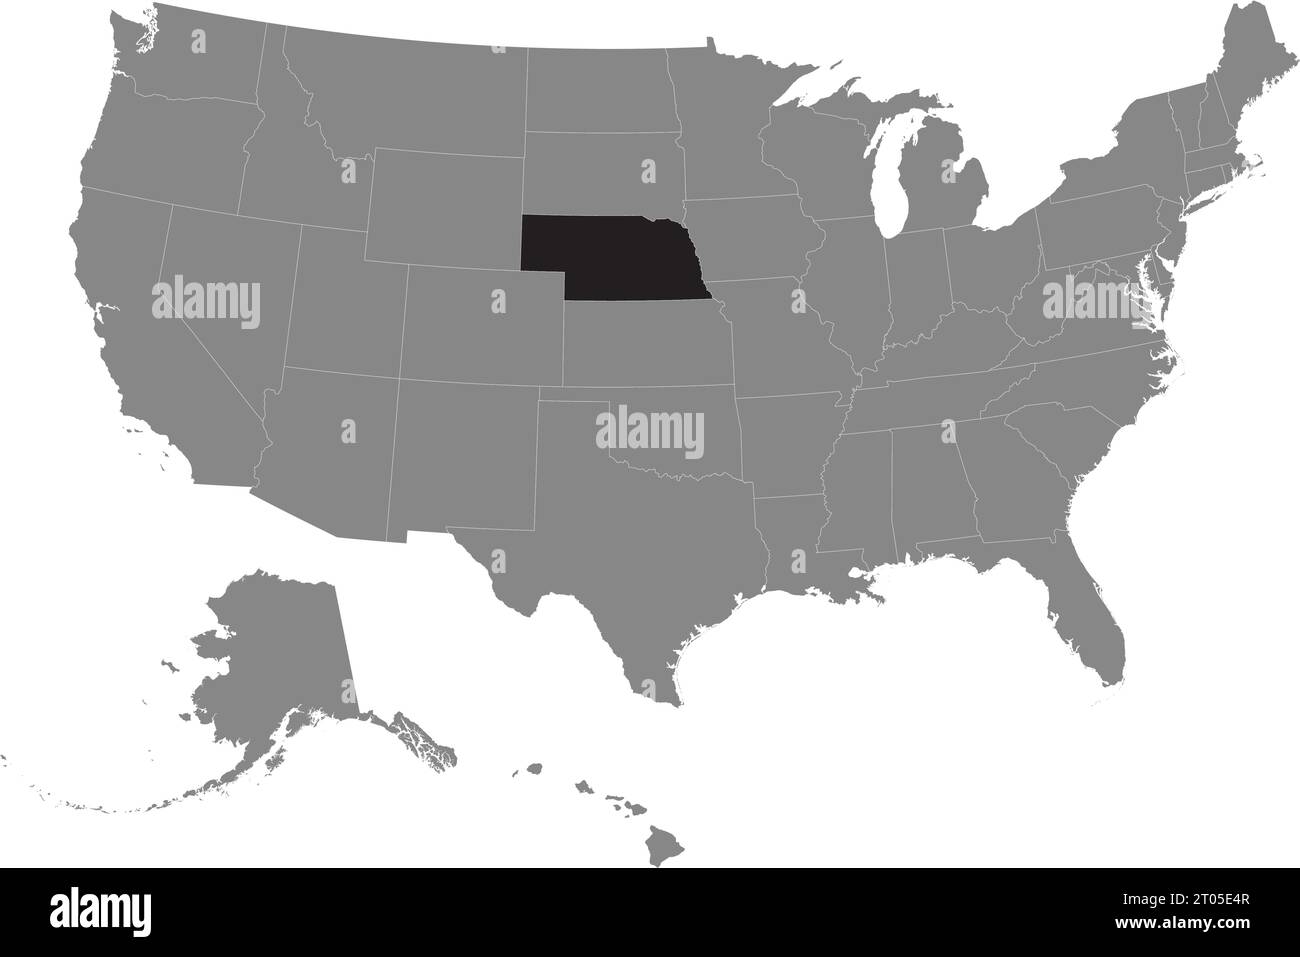 Schwarze CMYK-Bundeskarte von NEBRASKA in detaillierter grauer, leerer politischer Karte der Vereinigten Staaten von Amerika auf transparentem Hintergrund Stock Vektor